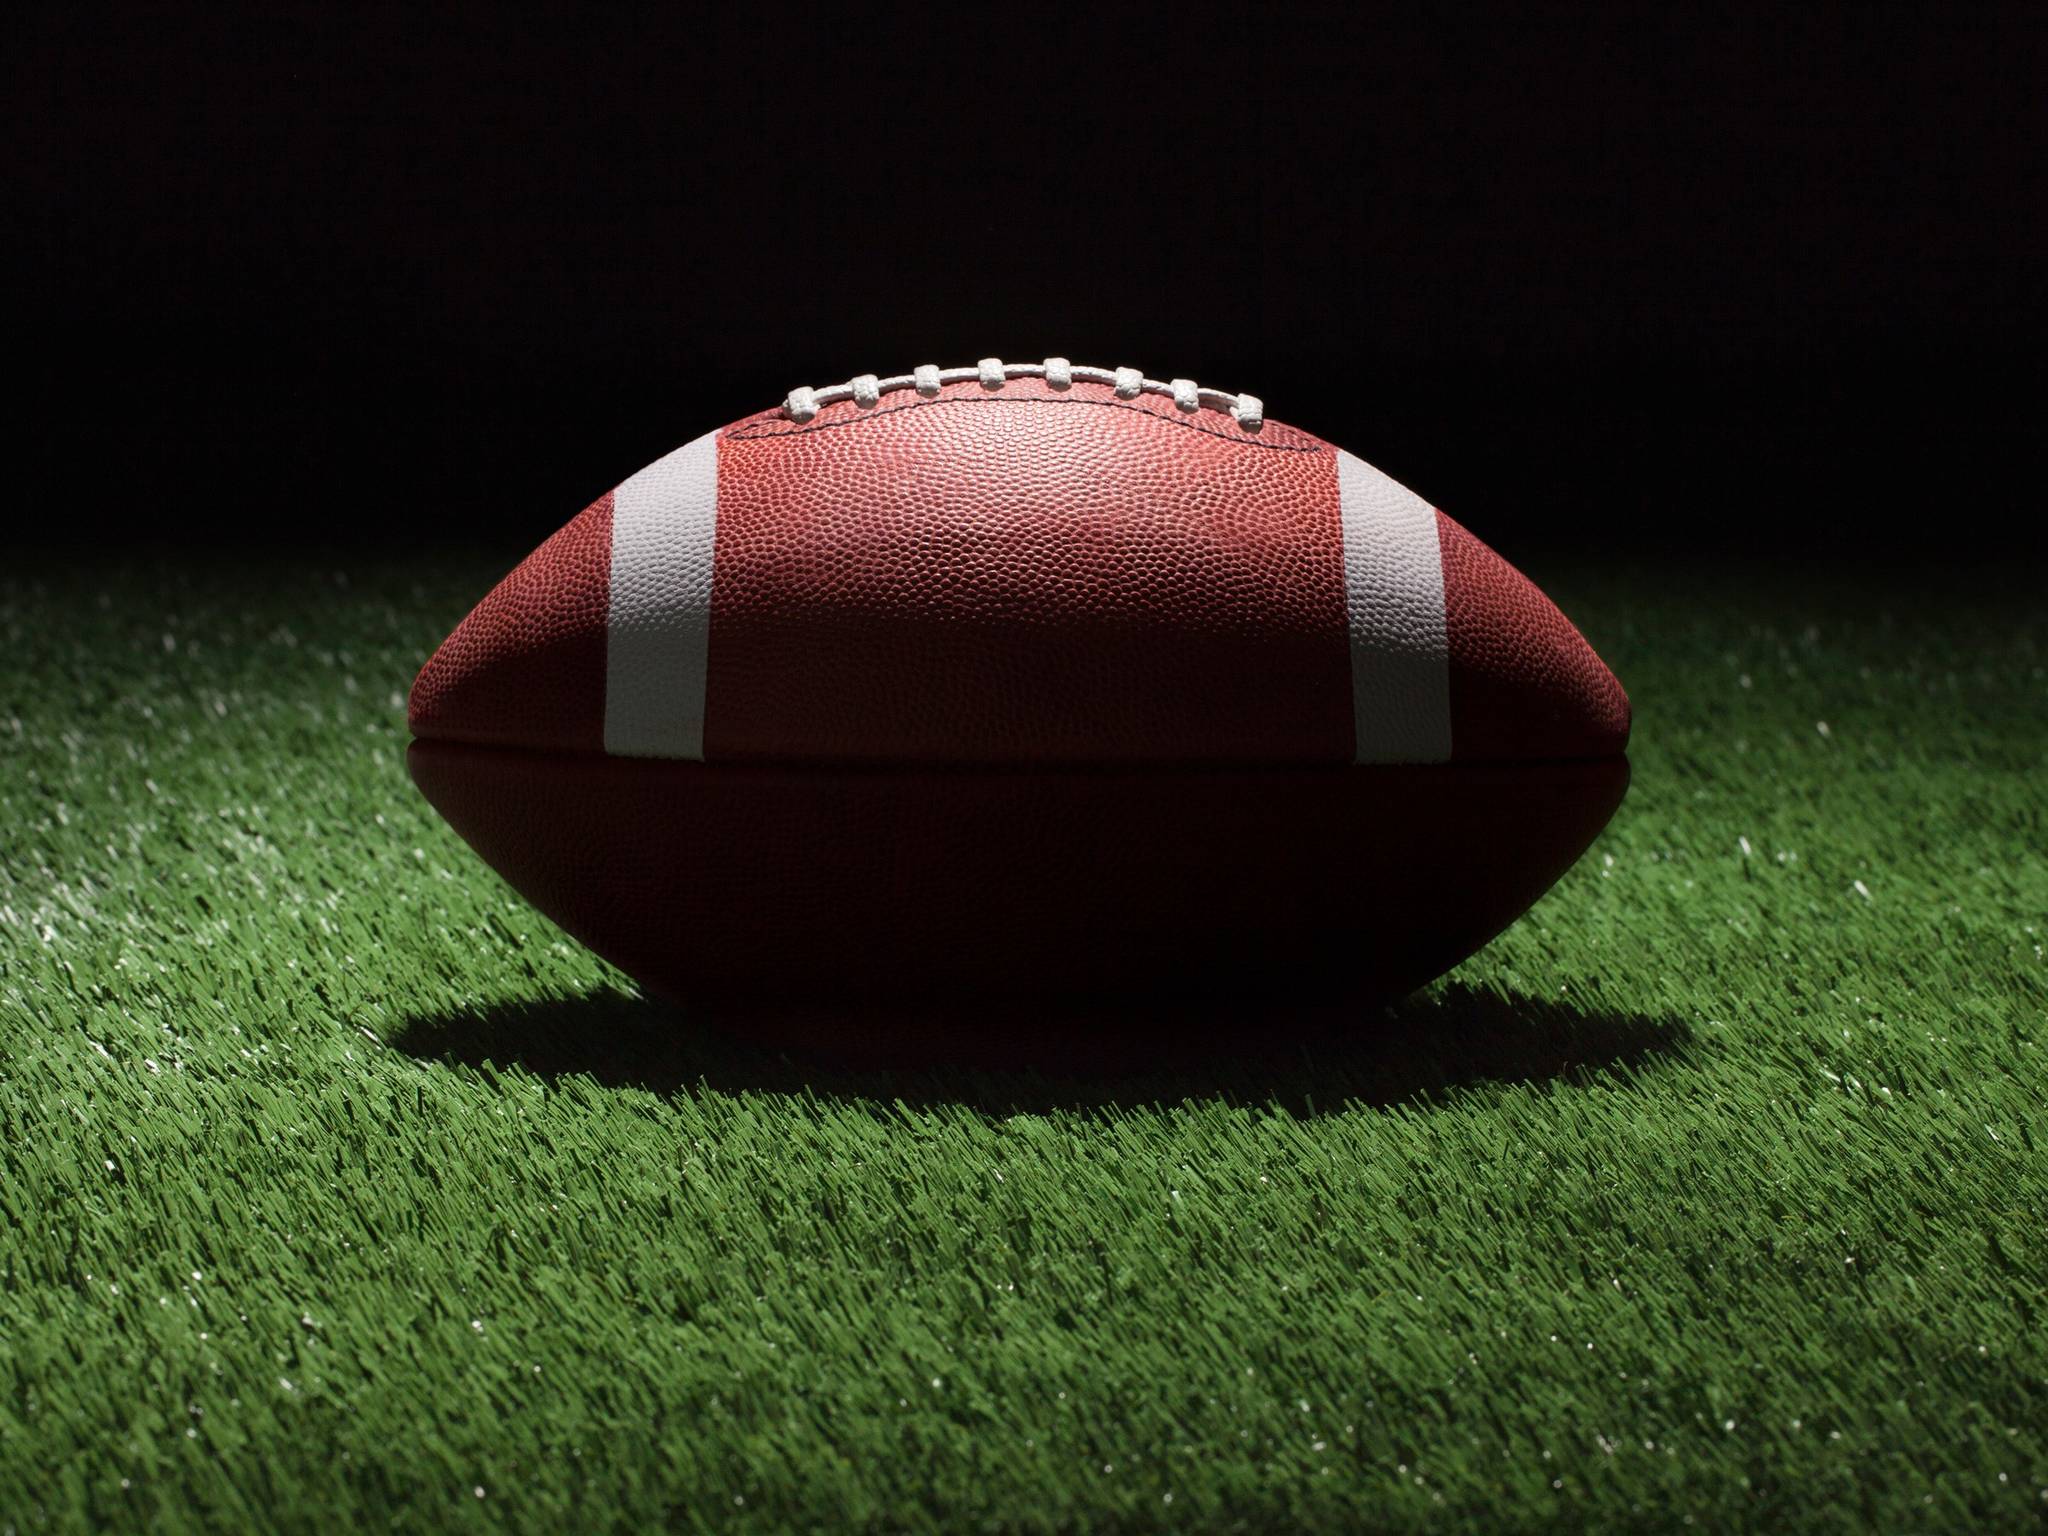 Pigskin Pick ‘Em: NFL Week 5 shooting for better results